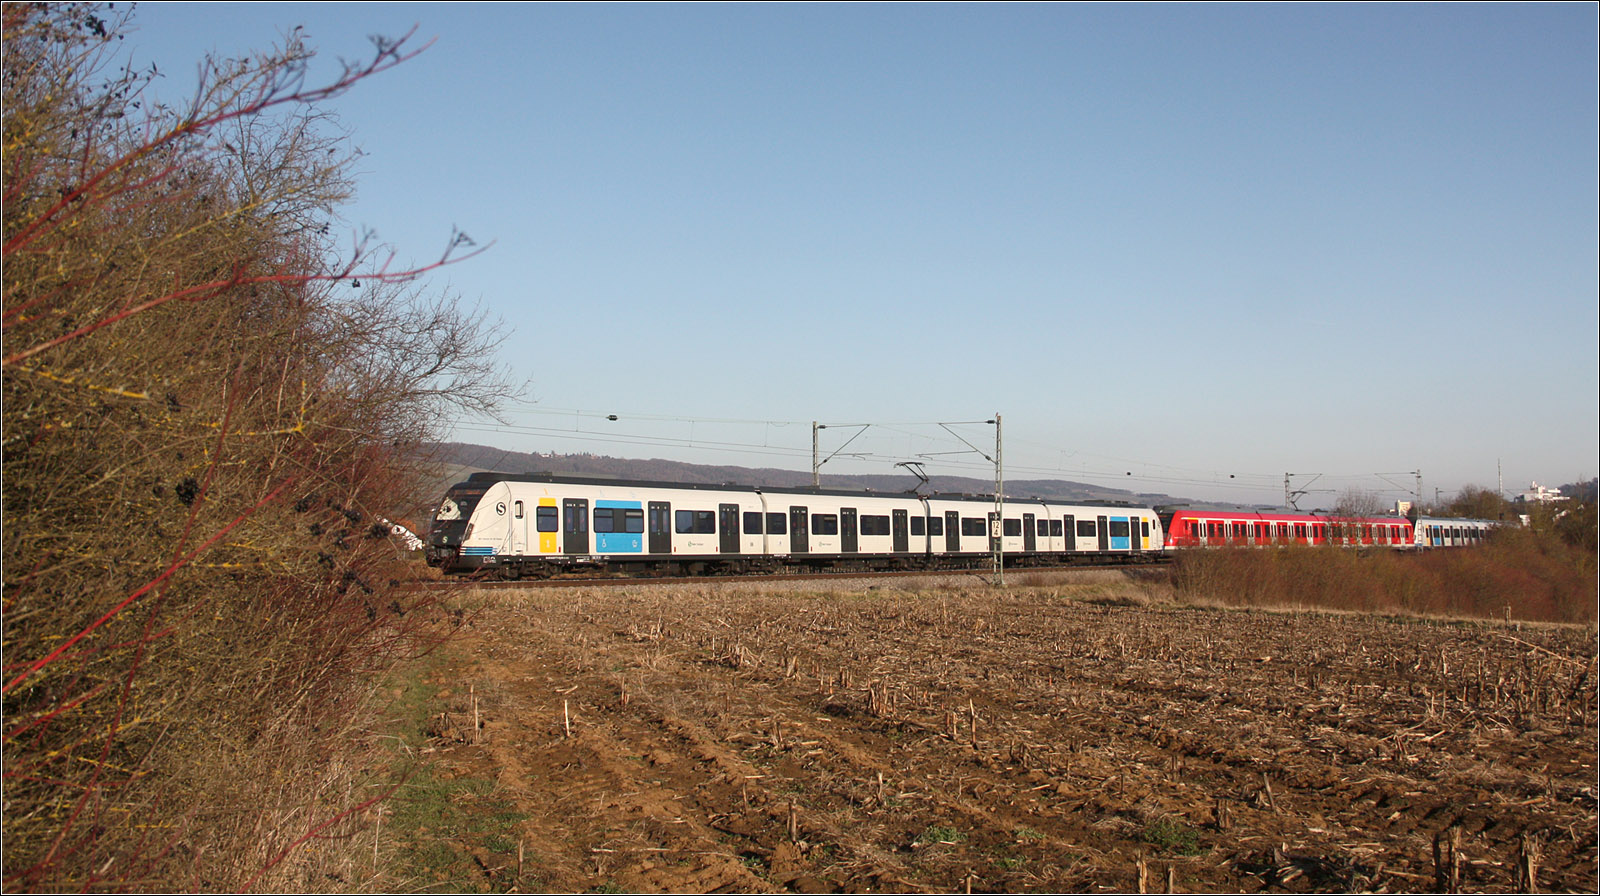 Weiß-Rot-Weiß - 

Exakt eingepasst zwischen das Gebüsch rechts und das Gebüsch links ist hier der erste Triebwagen eines Langzuges auf der S2 in Fahrtrichtung Stuttgart. Da nur neue bzw. alte Triebwagen der Baureihe 430 miteinander gekuppelt werden können, handelt es sich auch bei dem mittleren Wagen um einen neu gelieferten Zug, allerdings in der alten Farbgebung.

Bei Weinstadt-Endersbach, 13.02.2023 (M)